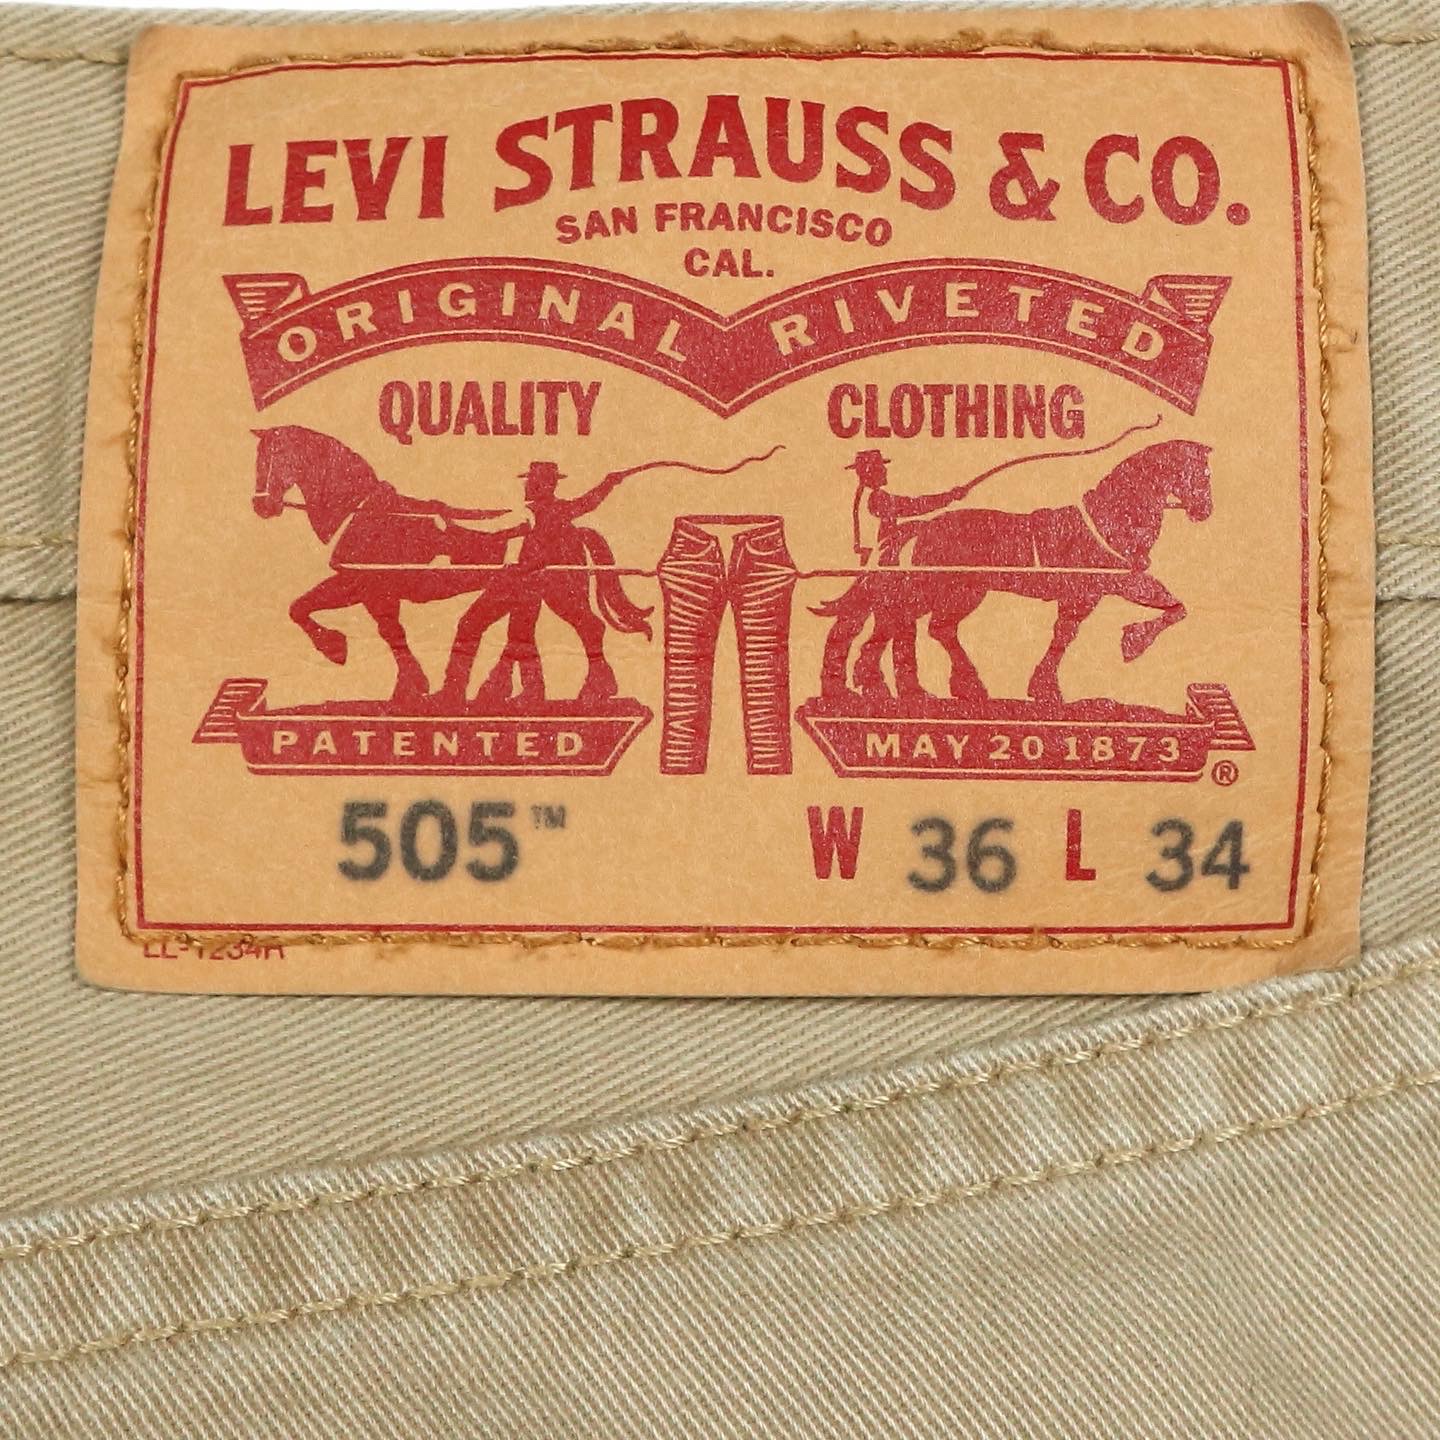 Levi’s 505 Denim Jeans Size 36